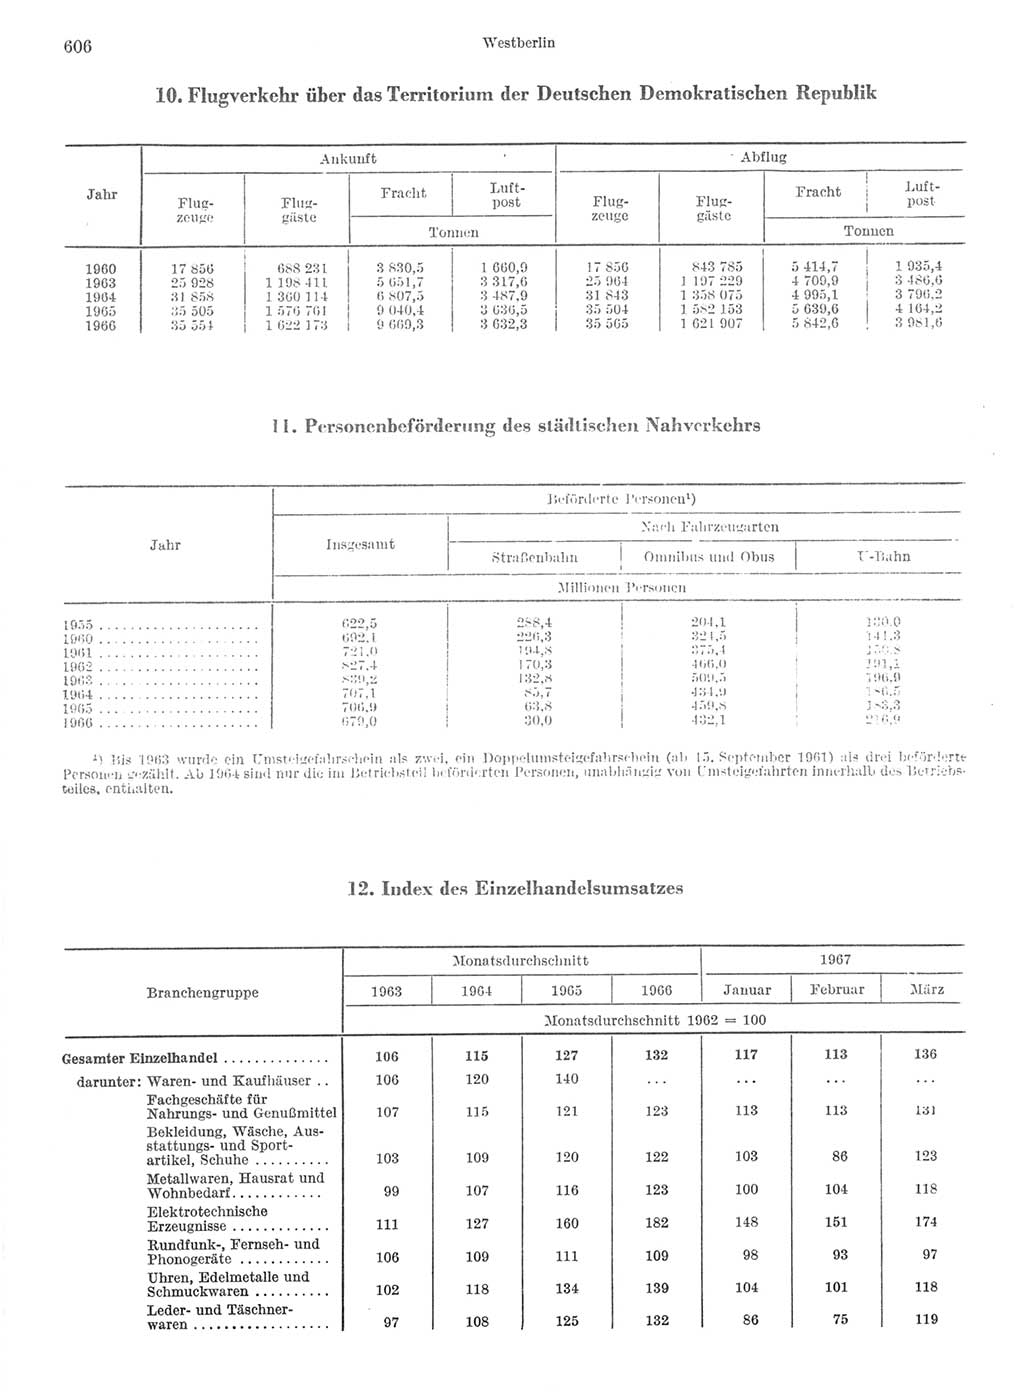 Statistisches Jahrbuch der Deutschen Demokratischen Republik (DDR) 1968, Seite 606 (Stat. Jb. DDR 1968, S. 606)